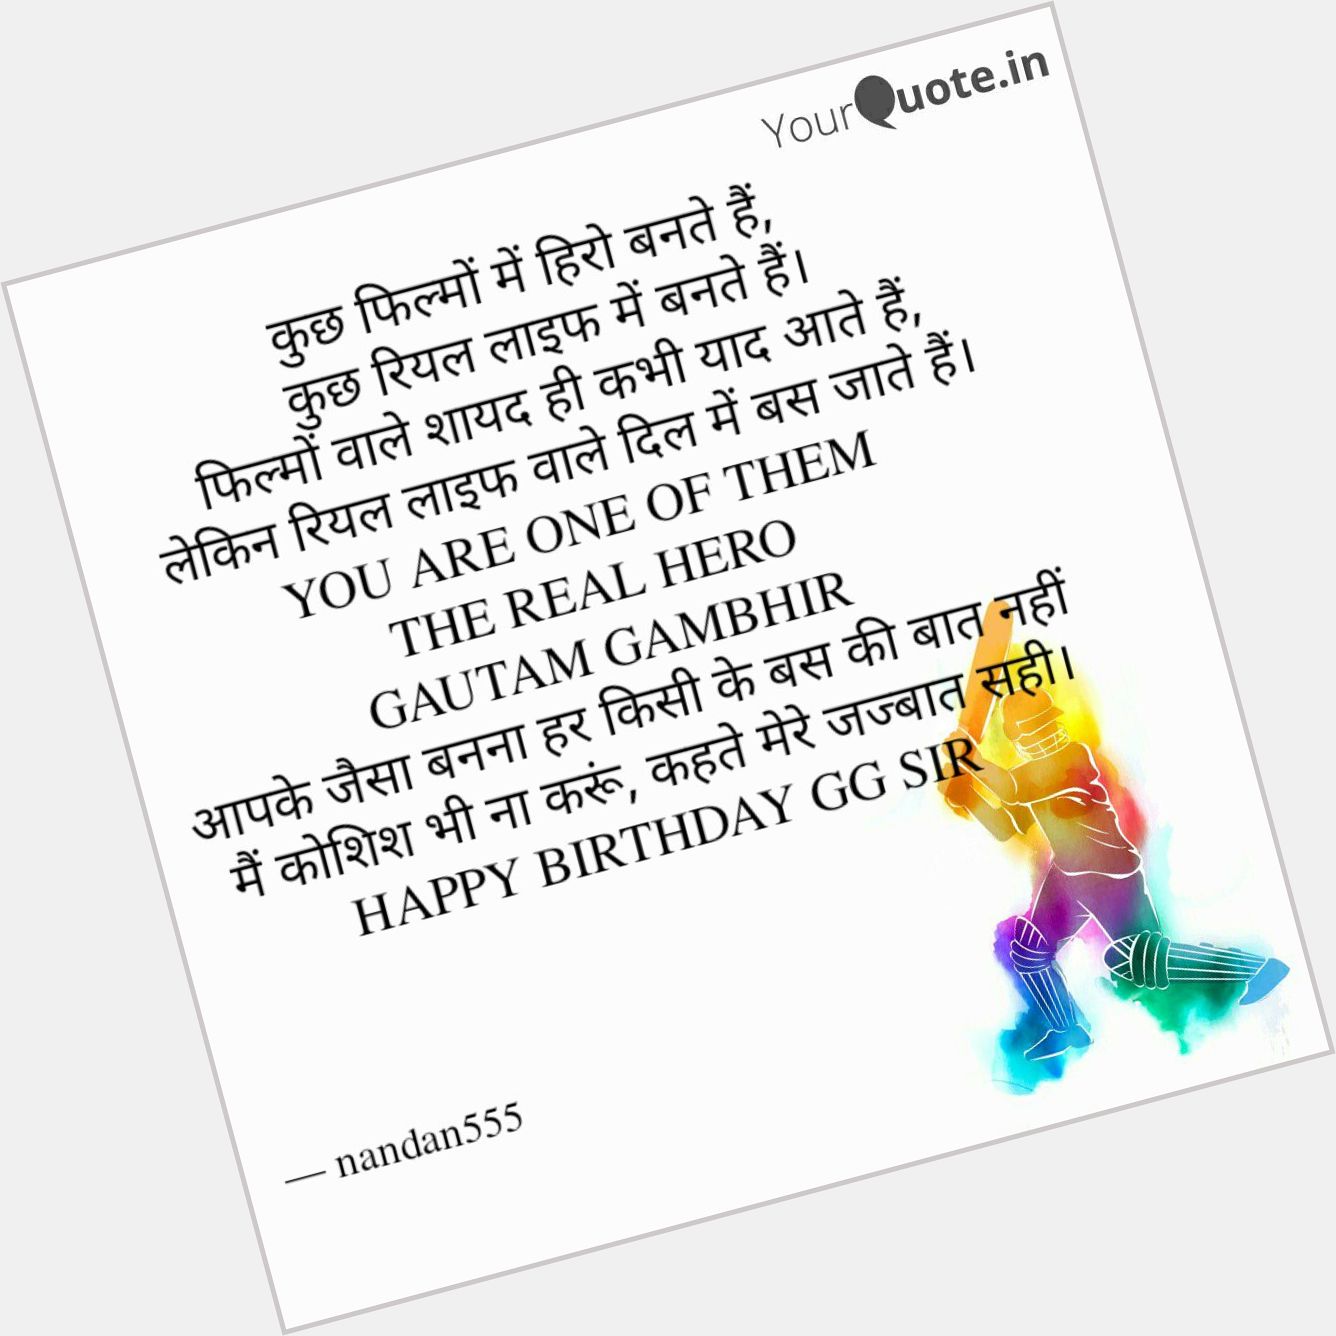 Happy birthday Gautam Gambhir.
I want to be like you. 